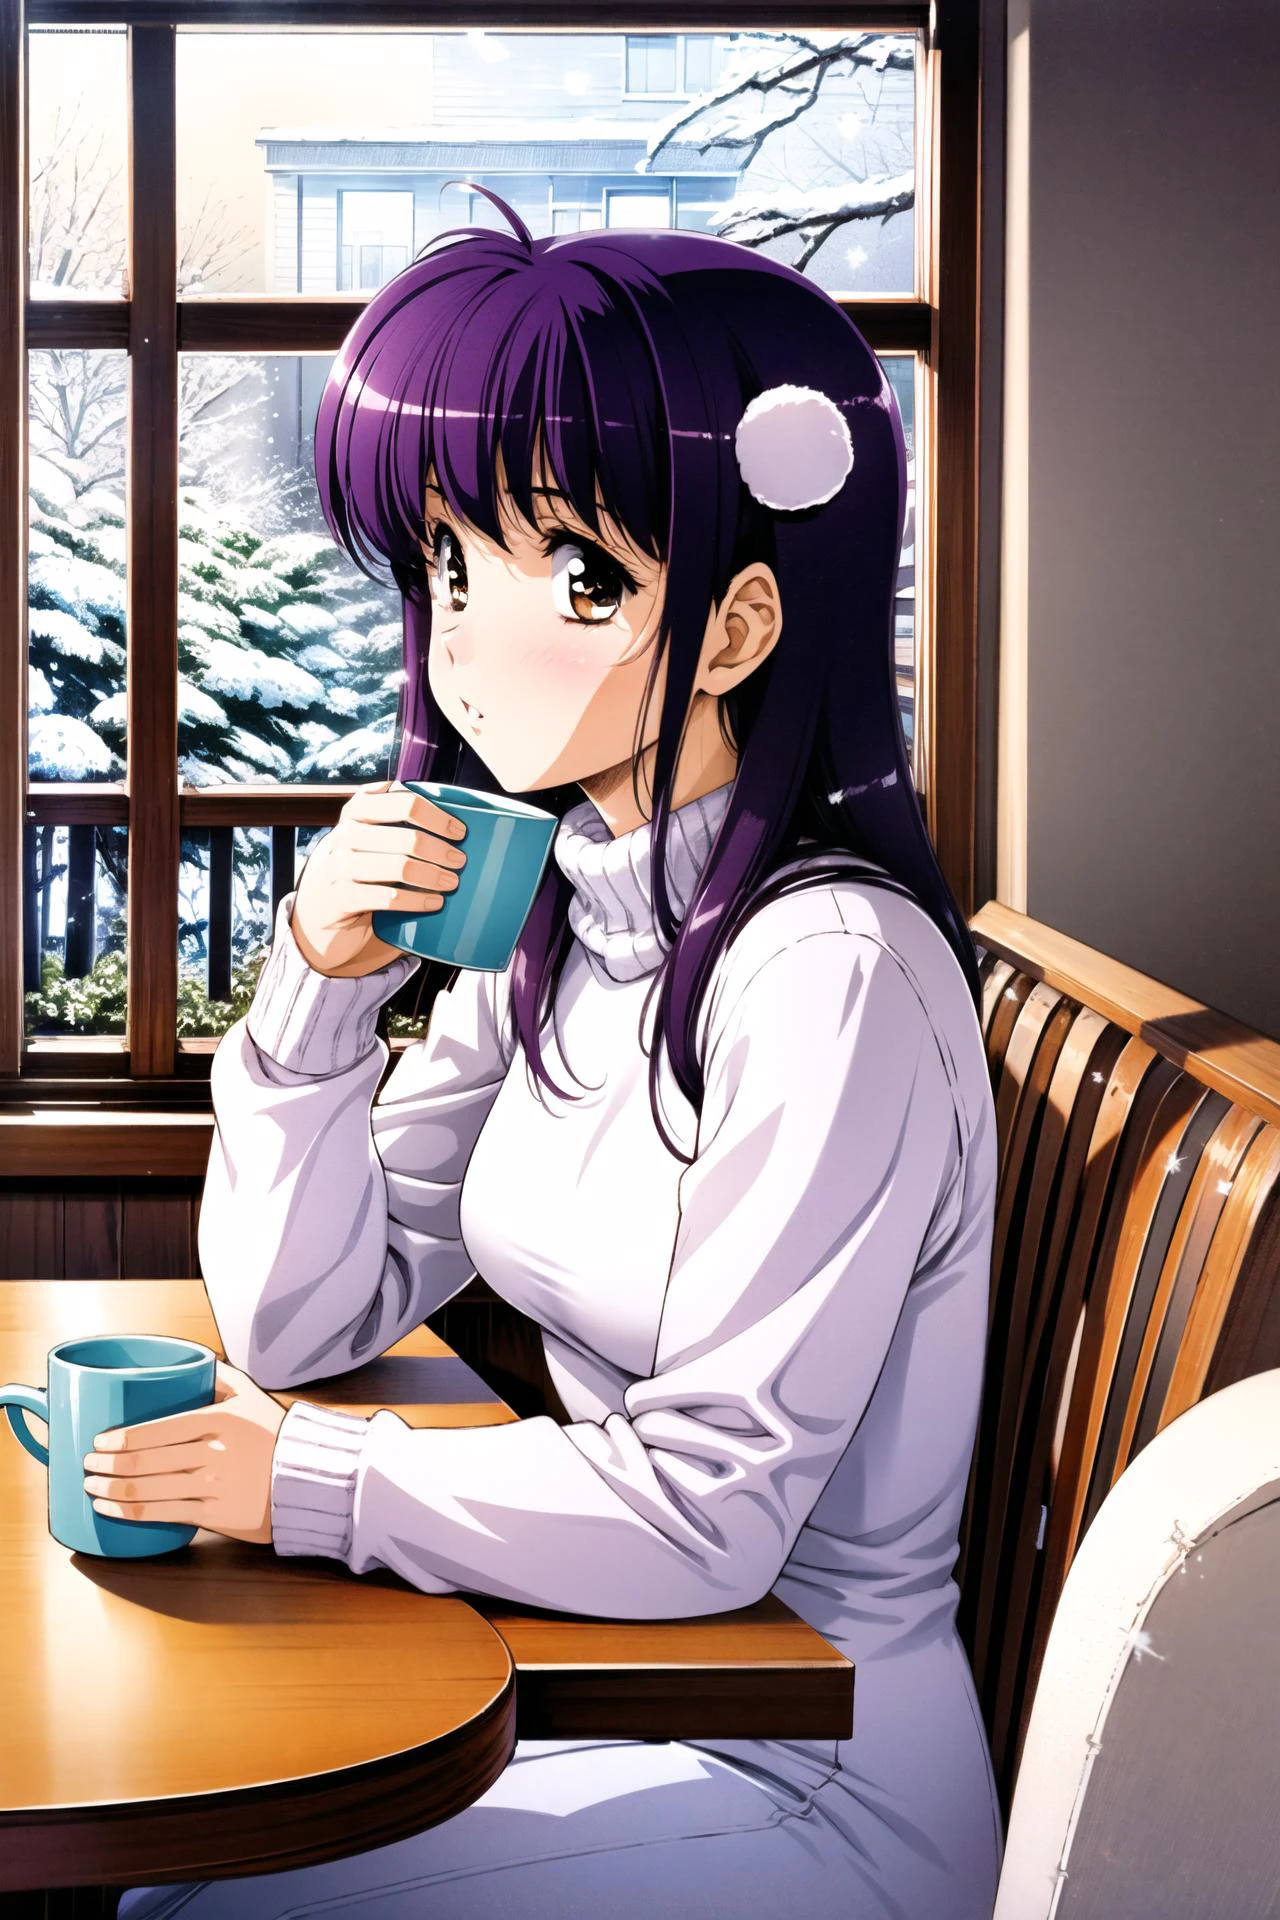 1個女孩, 獨自的, 窗戶, 坐著, 杯子, 喝, 馬克杯, 毛球, 紫色頭髮, 棕色的眼睛, 長袖, 髮飾, 裙子, 雪ing, 雪, 在室內, 椅子, 高領毛衣, 